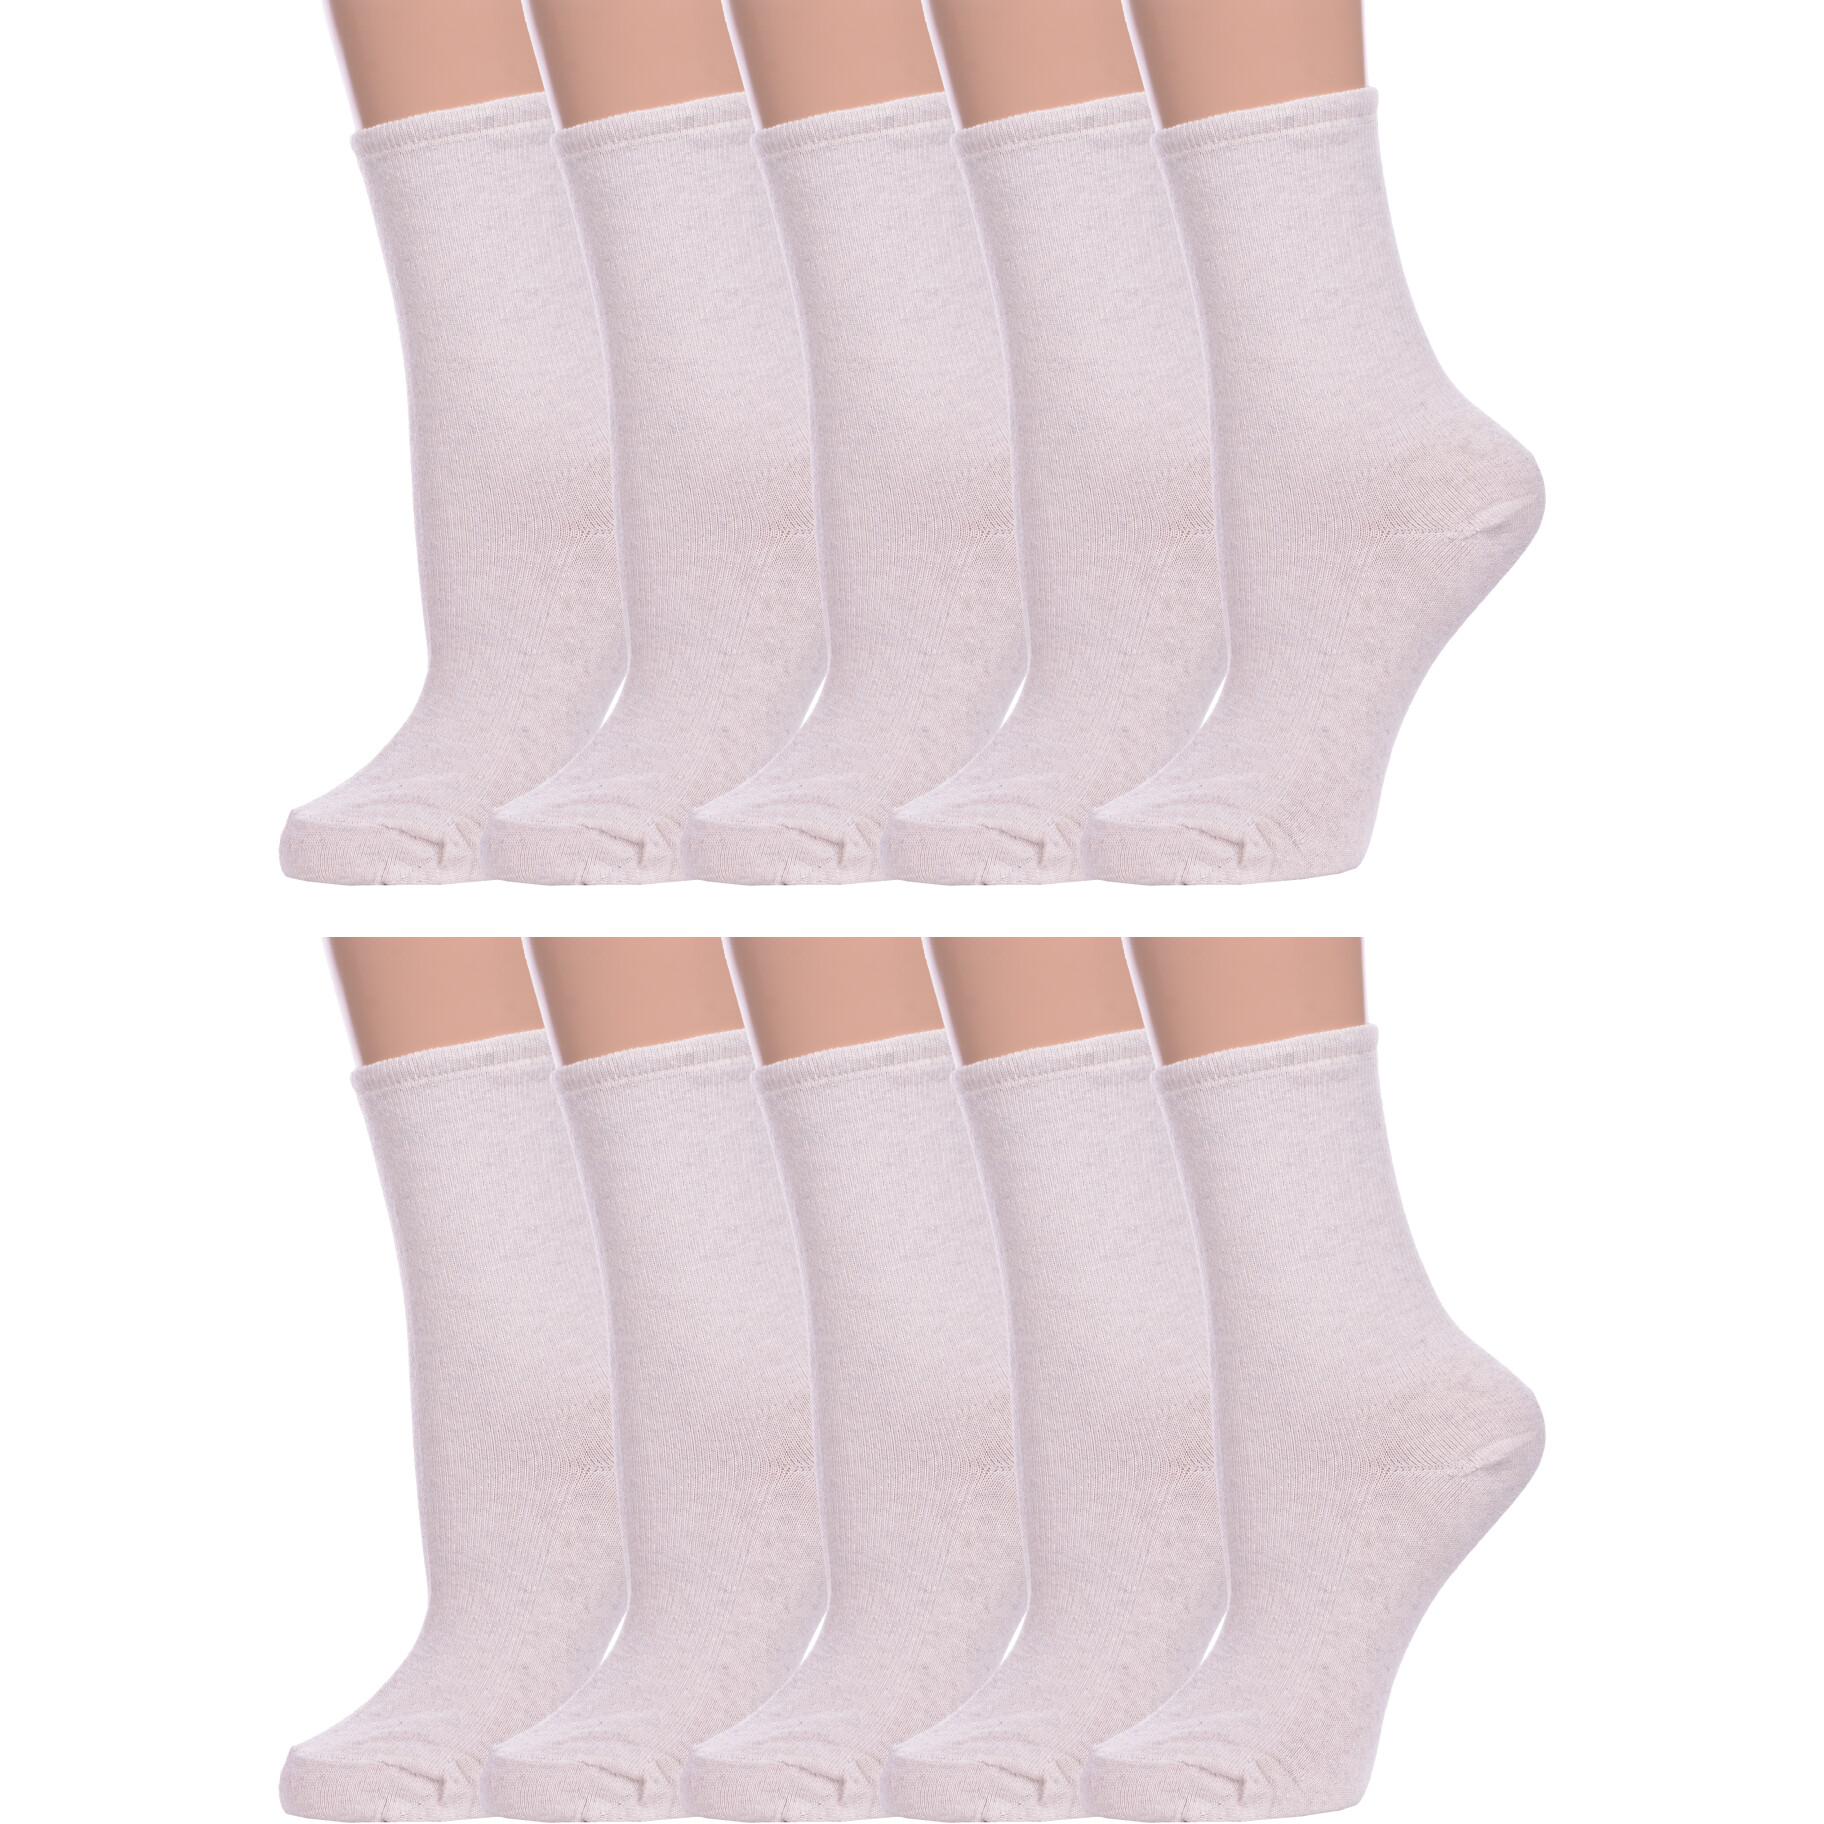 Комплект носков женских Альтаир 10-М198 бежевых 23 10 пар